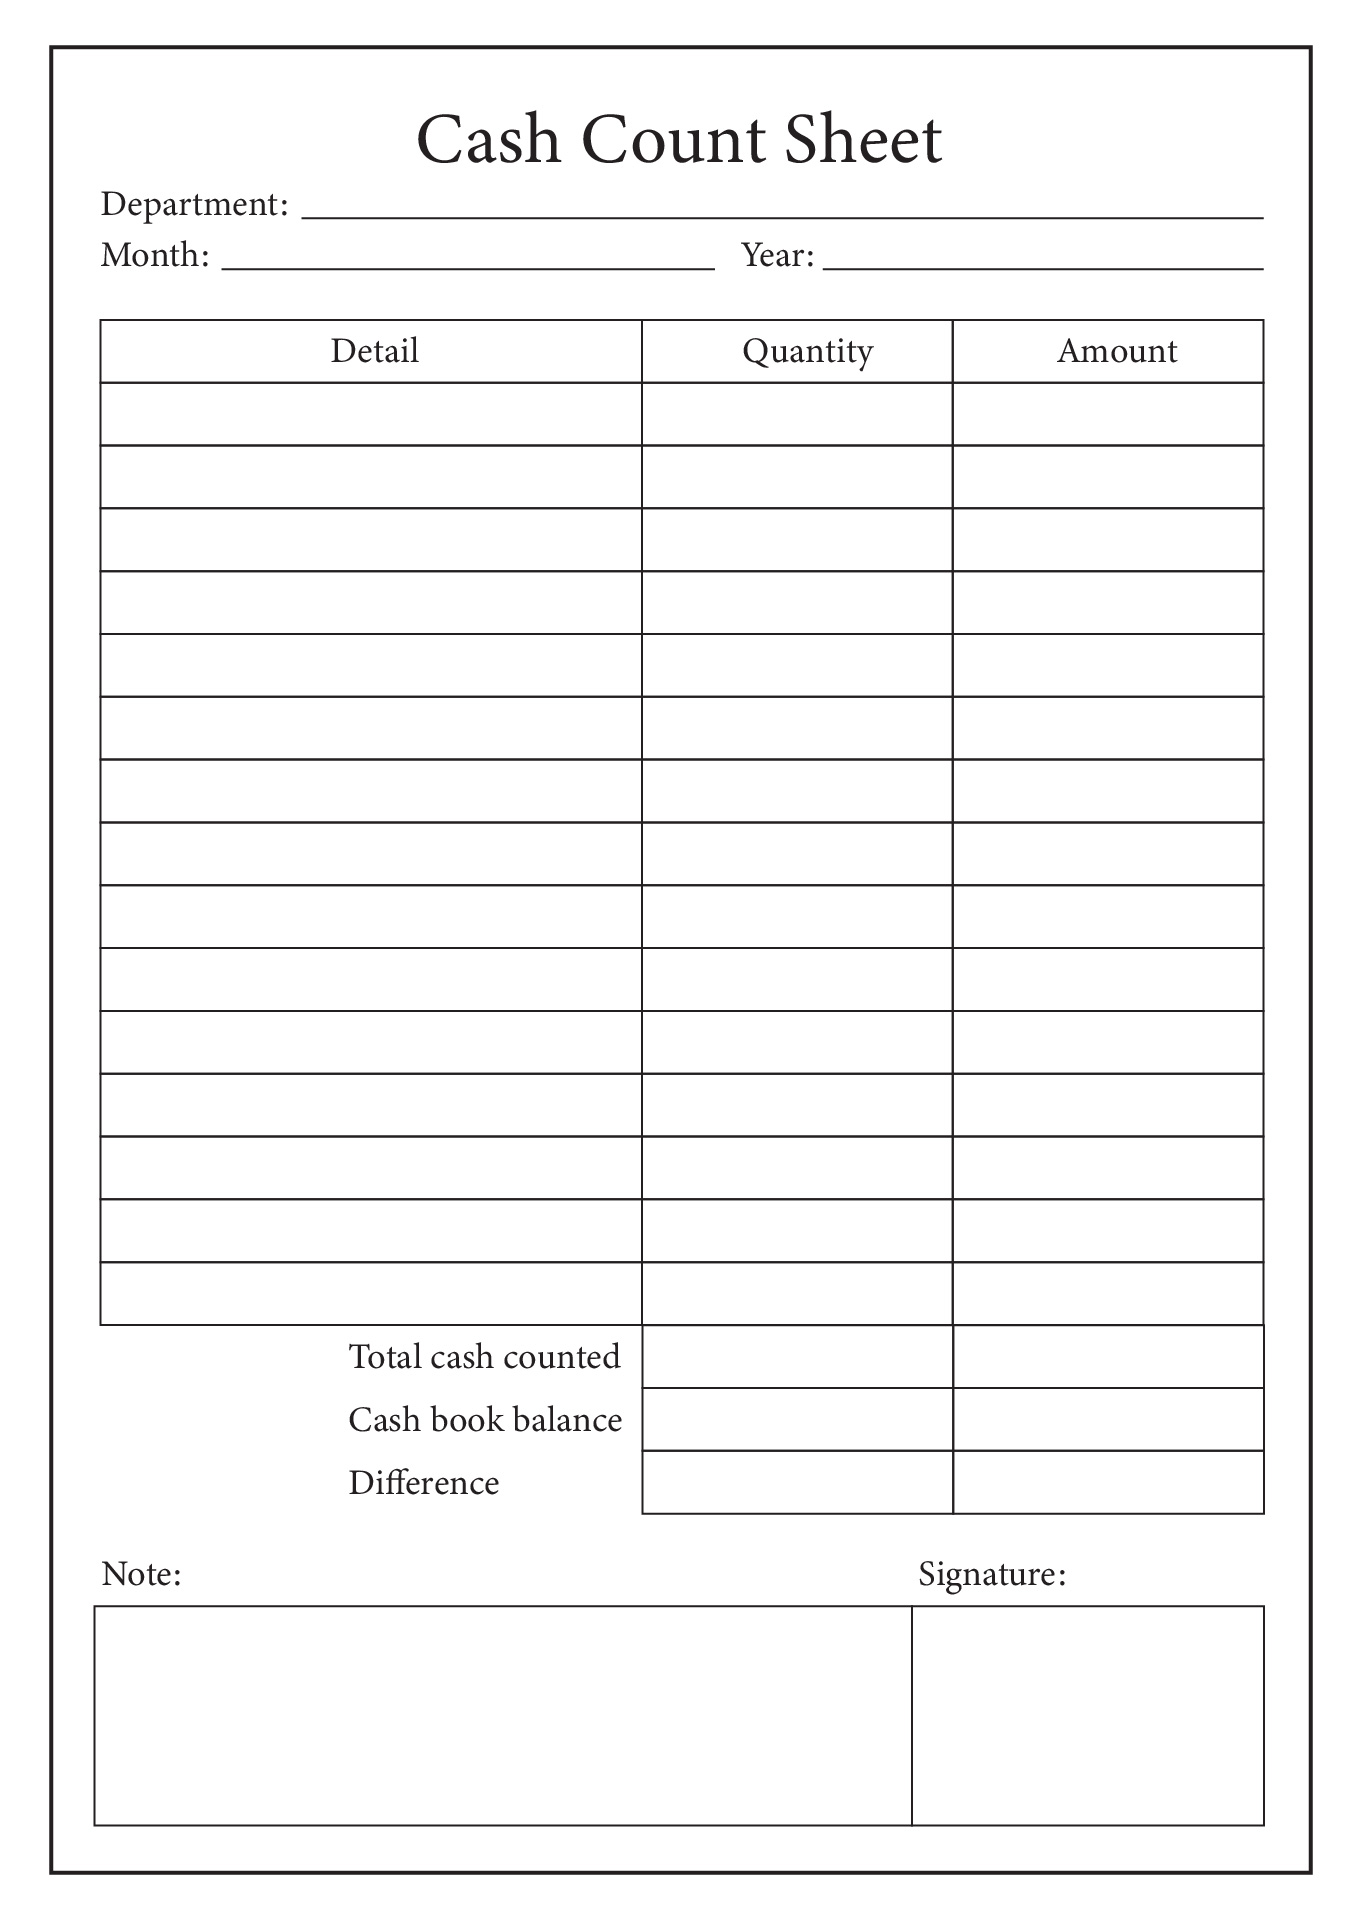 cash-register-free-printable-cash-drawer-count-sheet-aulaiestpdm-blog